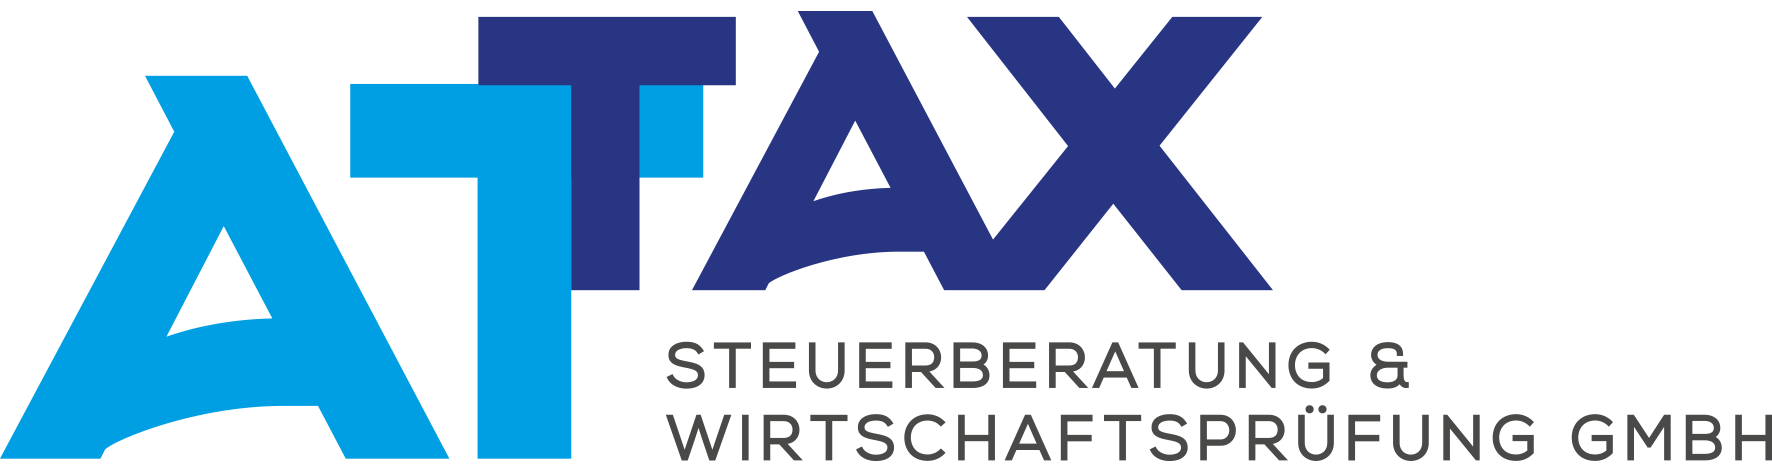 Austrian TAX & AUDIT Steuerberatung & Wirtschaftsprüfung GmbH